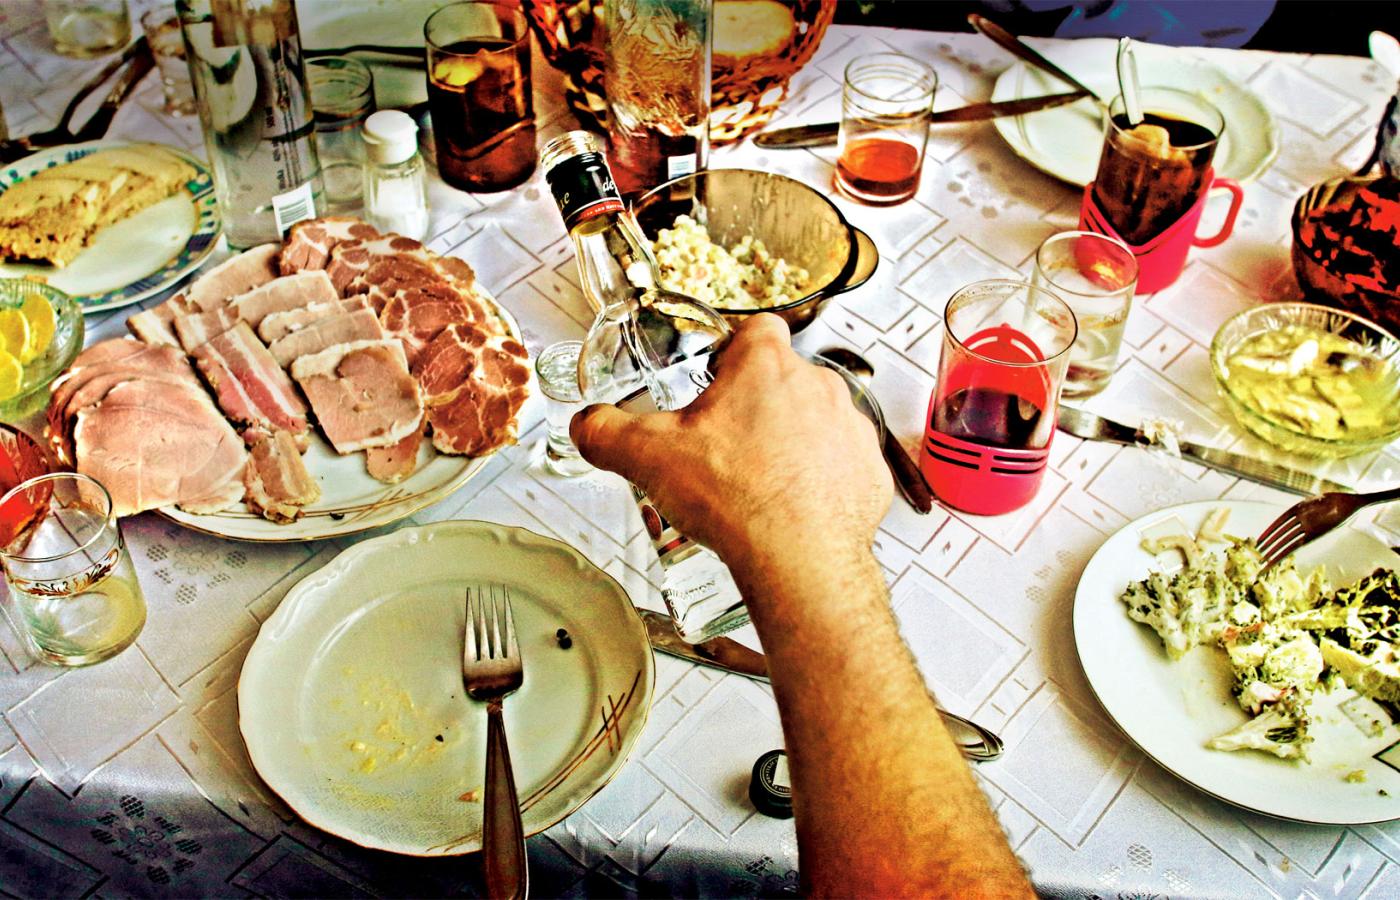 Zwyczaj jedzenia poza domem jest słabiutki. 42 proc. Polaków nie zdarza się w ogóle jadać w restauracjach czy barach.